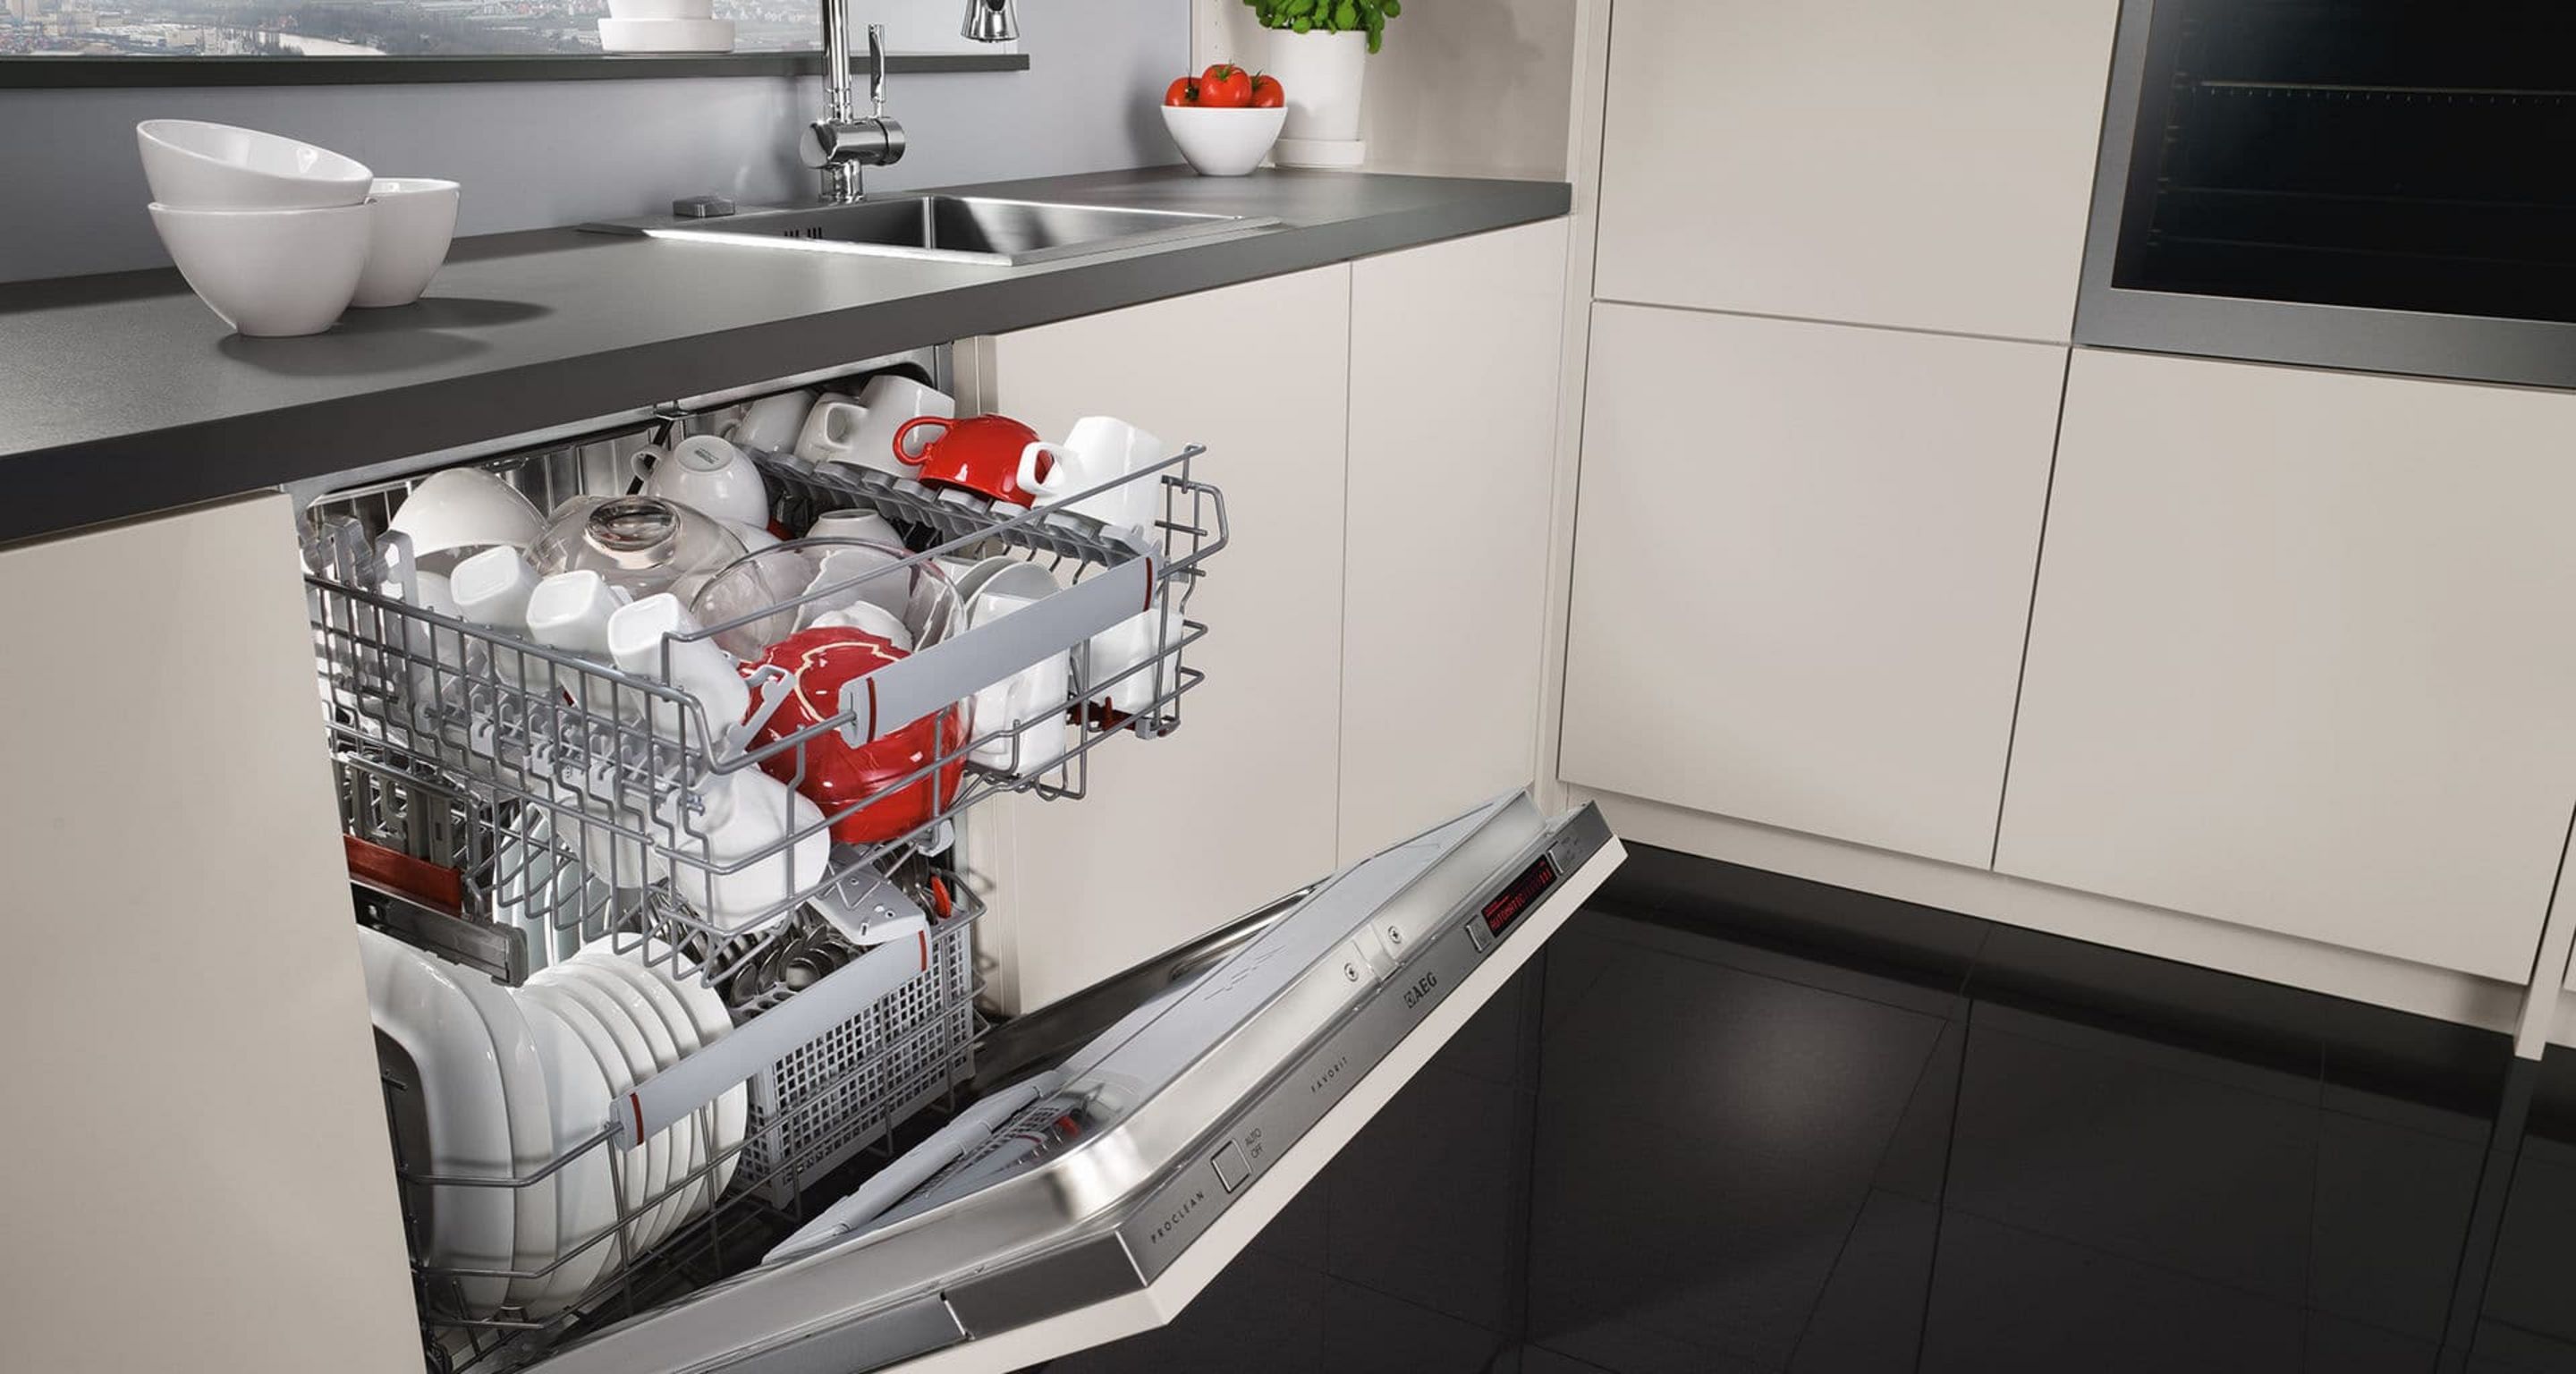 Встроенная посудомойка 45 см рейтинг. ПММ 450 встраиваемая под фасад 600. Топ посудомоечных машин 60 см встраиваемая 2020. Встроенная компактная ПММ 600. Посудомойка 45 см встраиваемая.